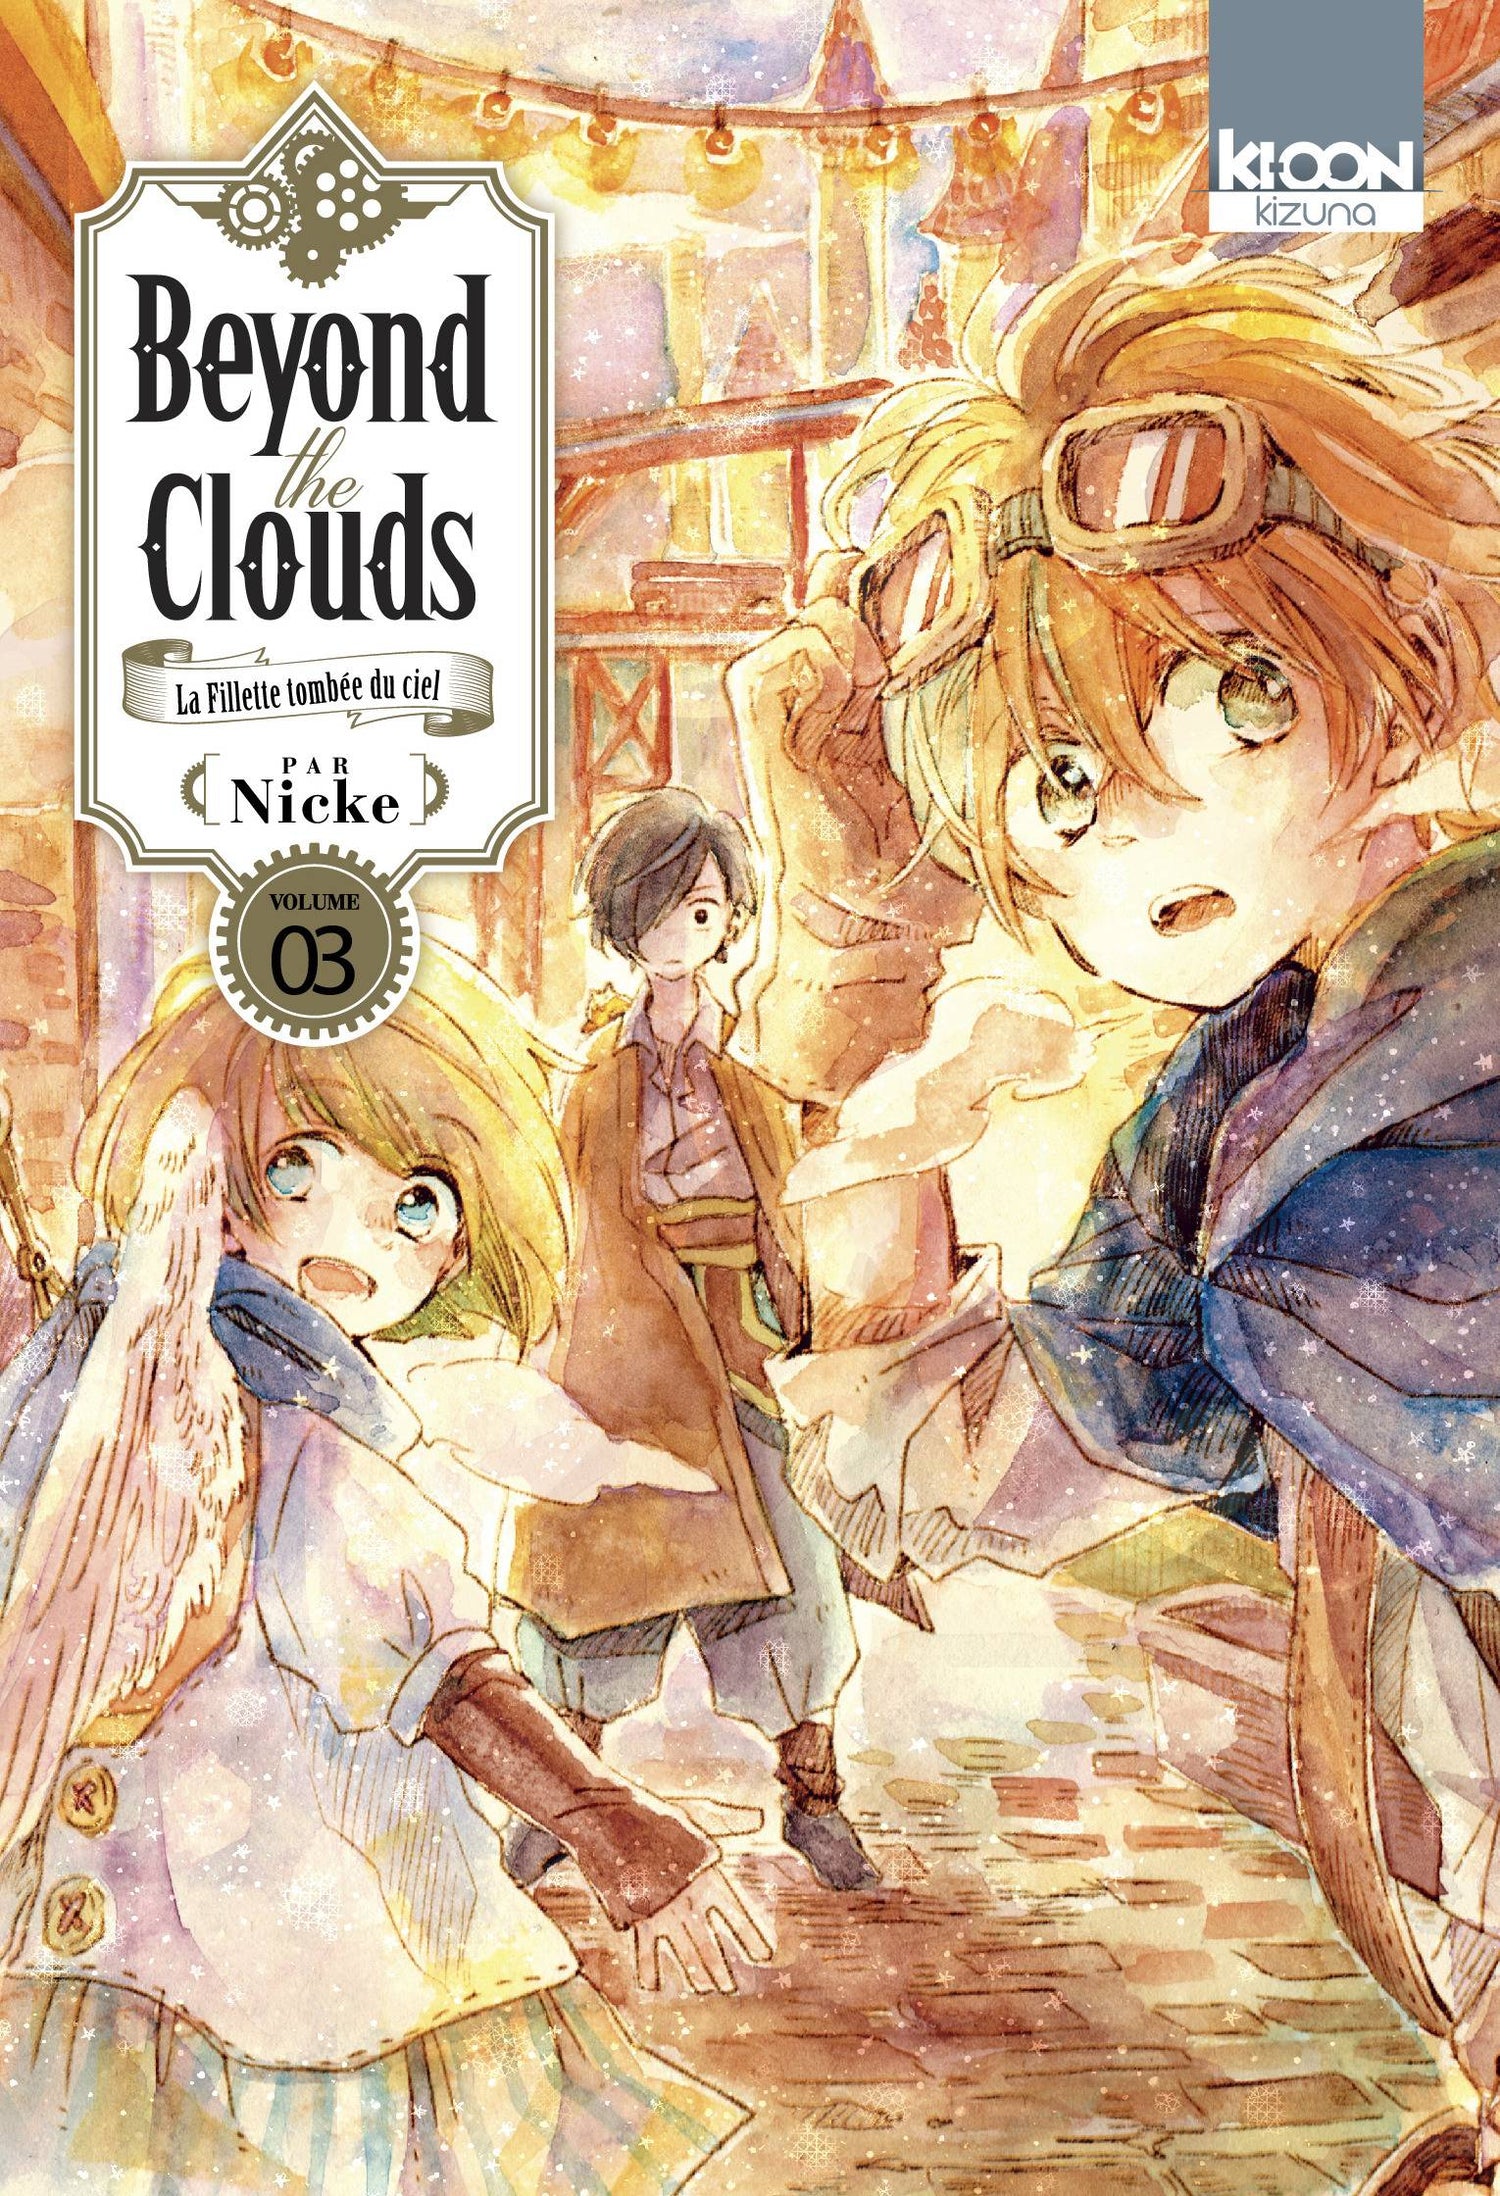 Beyond Clouds Vol. 03